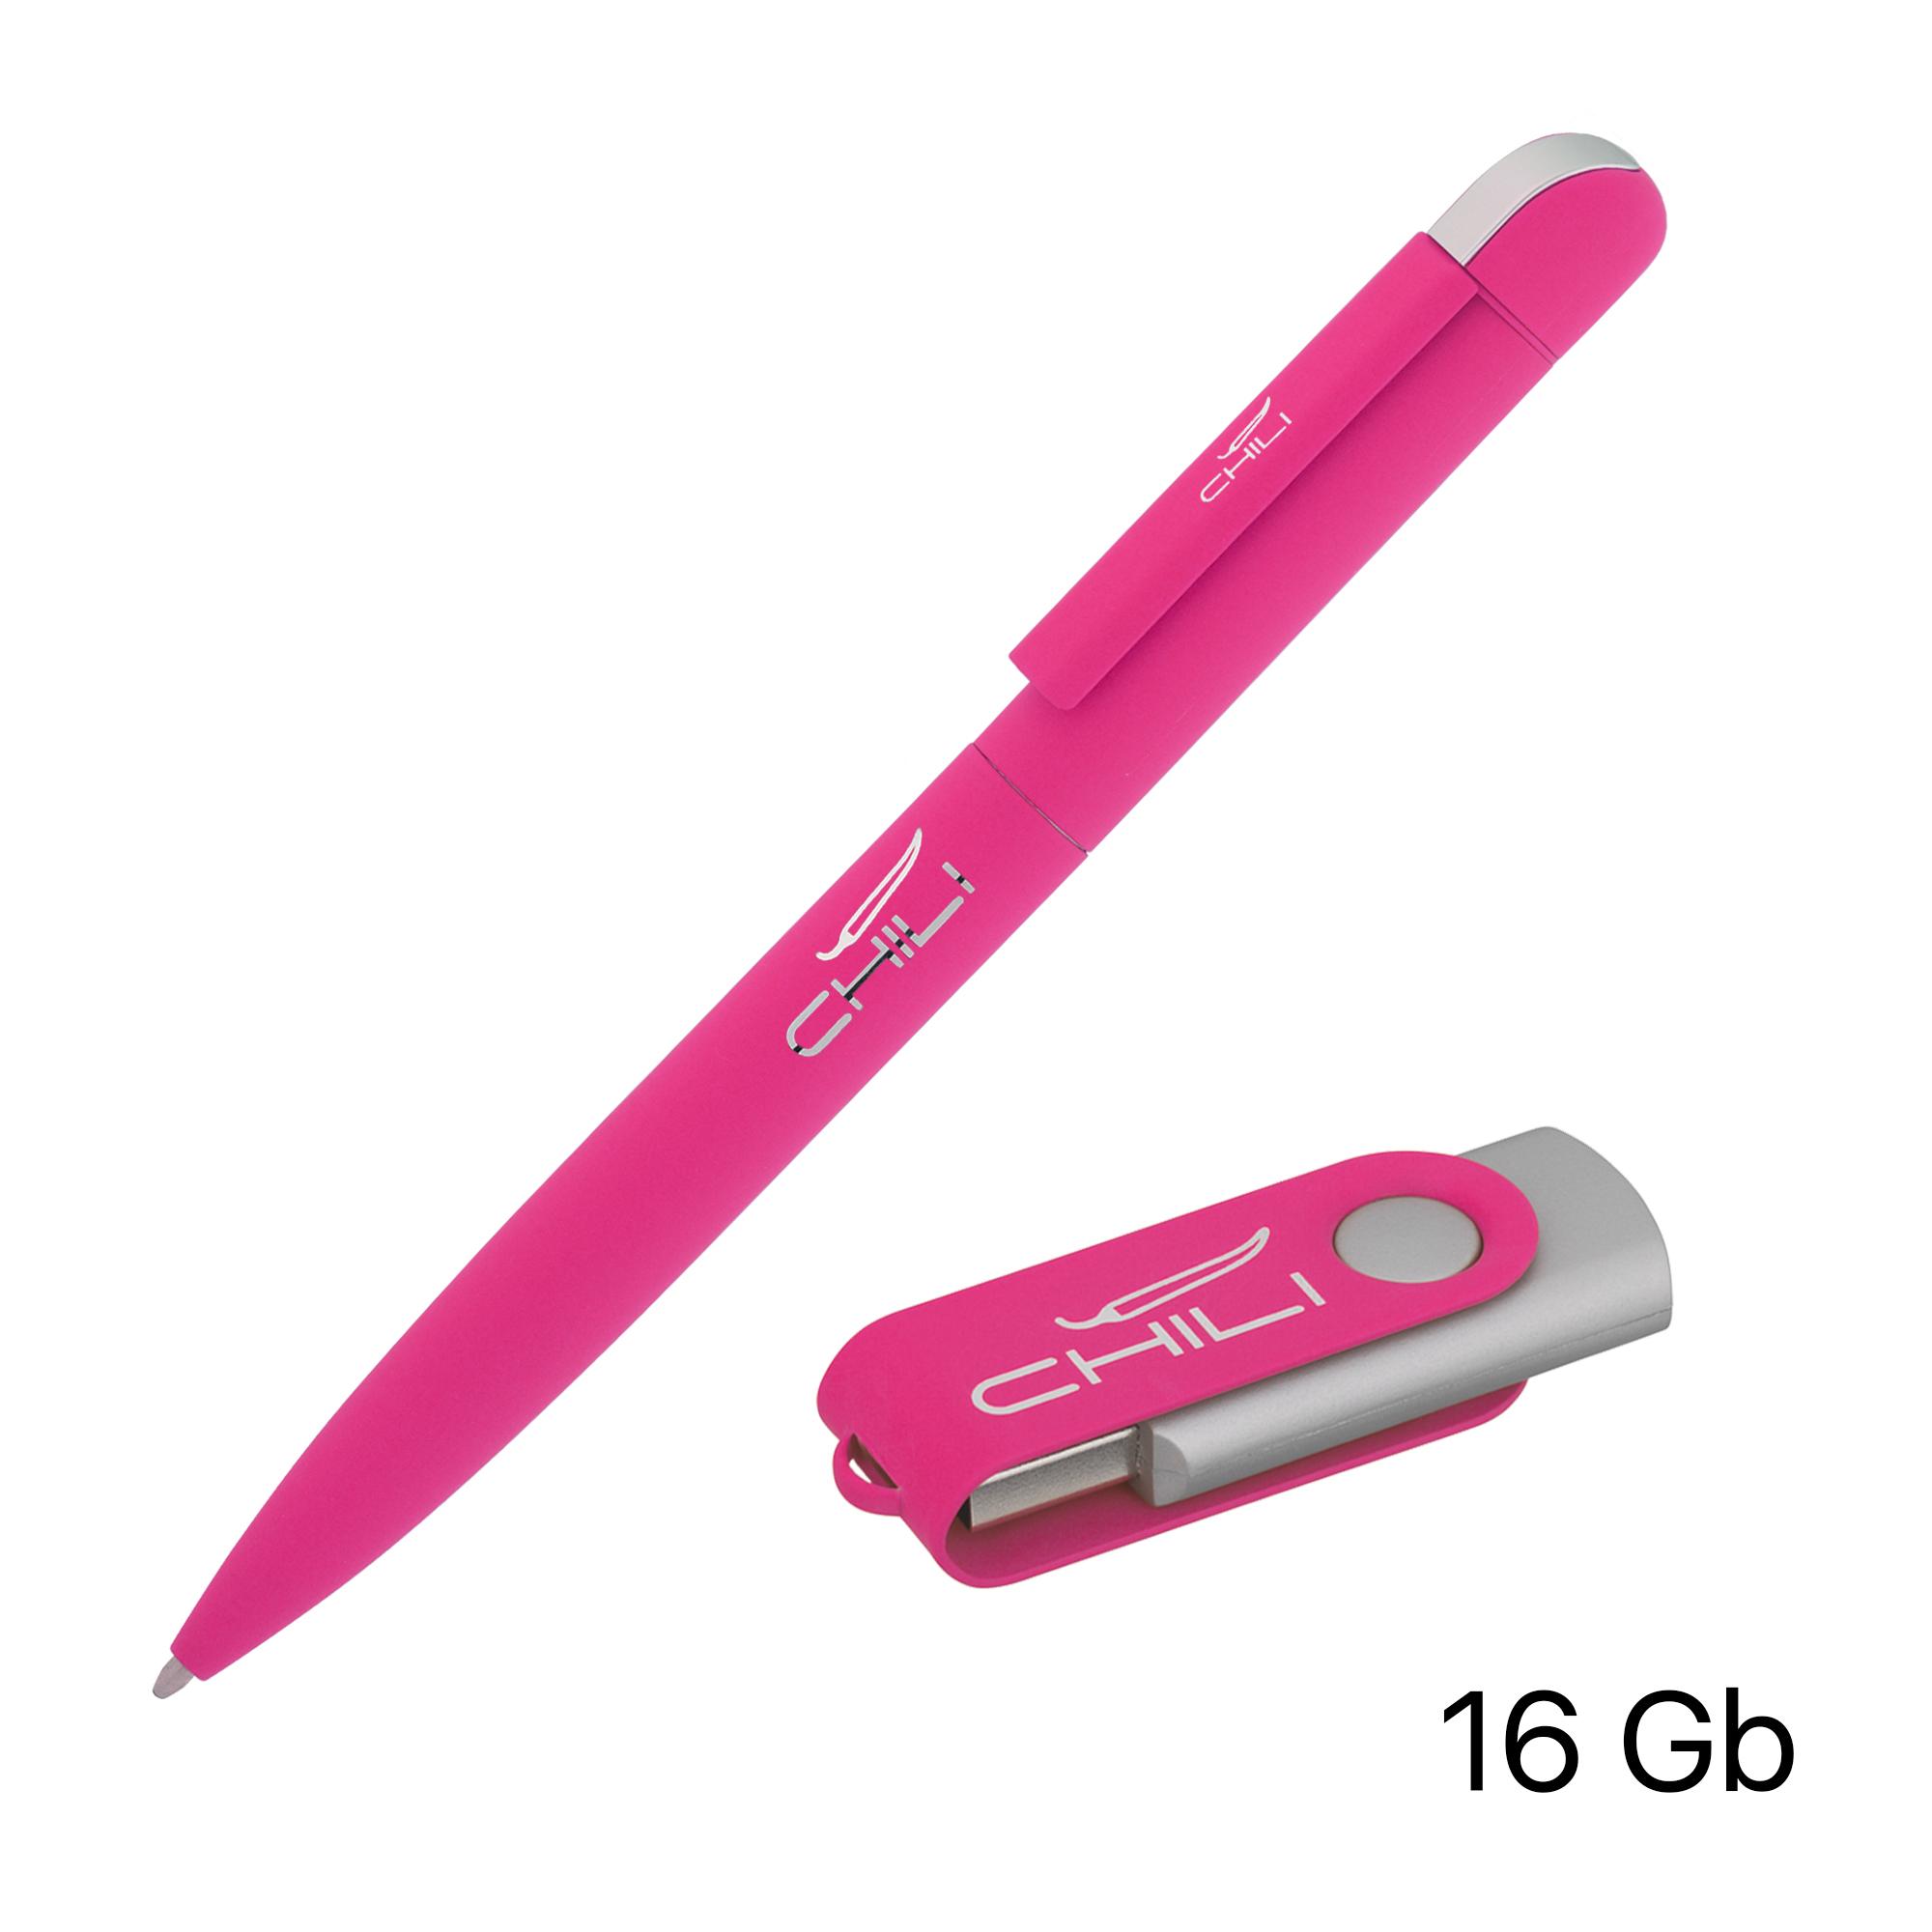 Набор ручка + флеш-карта 16 Гб в футляре, покрытие soft touch, цвет фуксия, фото 1